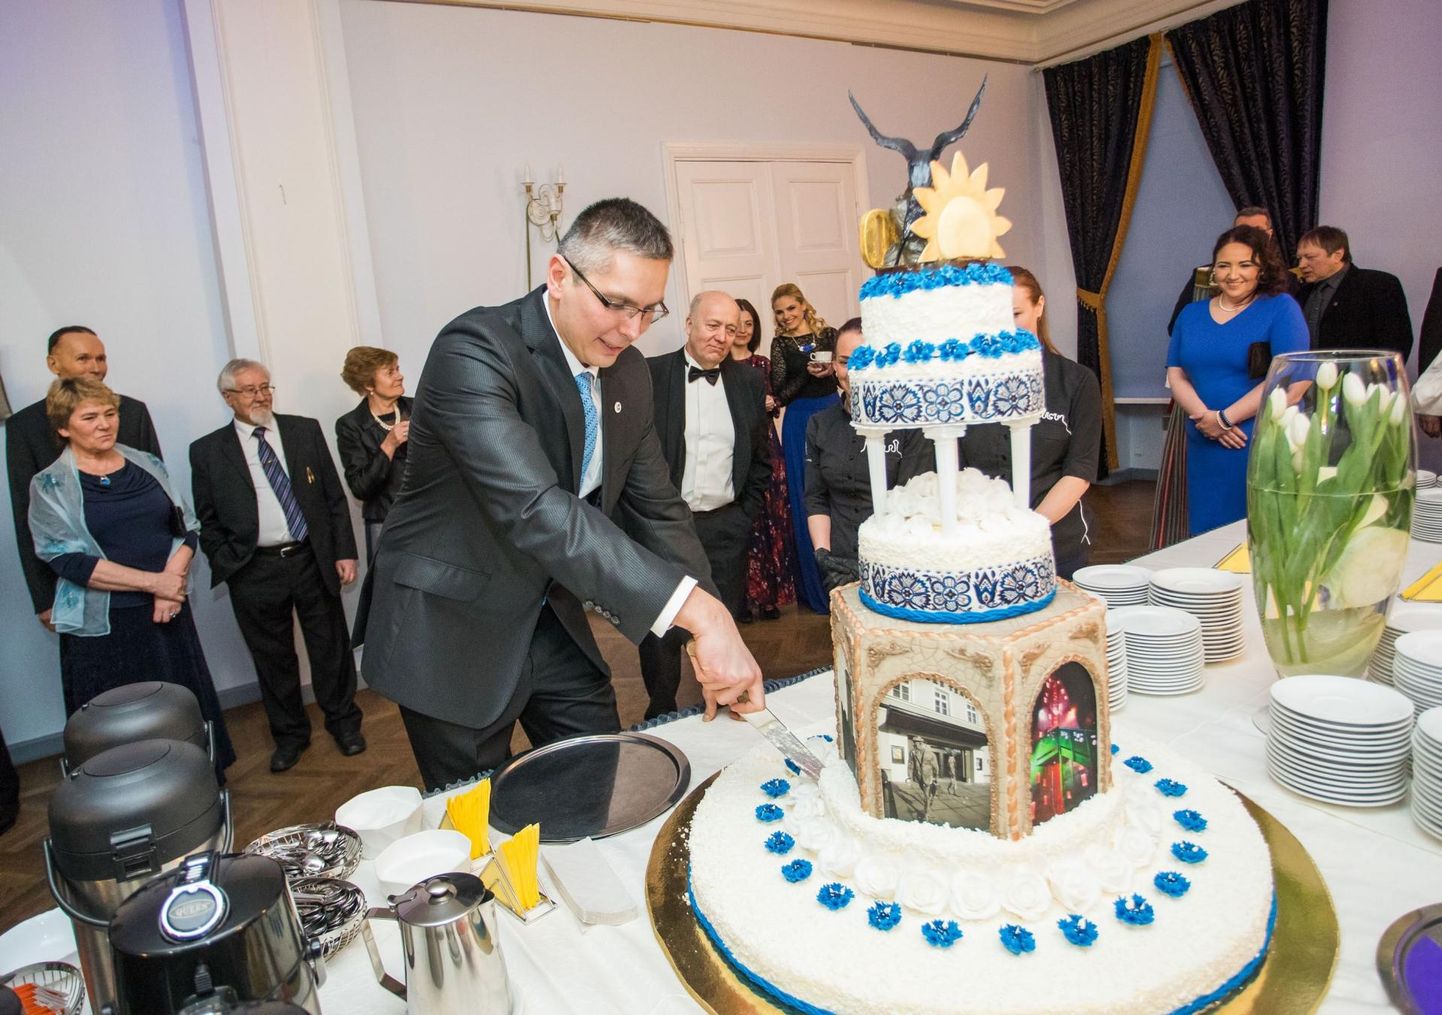 Nagu iga sünnipäevapidu, lõpeb ka Eesti oma tordi lahtilõikamisega. Rakvere linna korraldataval vastuvõtul on see au ka sel aastal linnapea Marko Tormil.